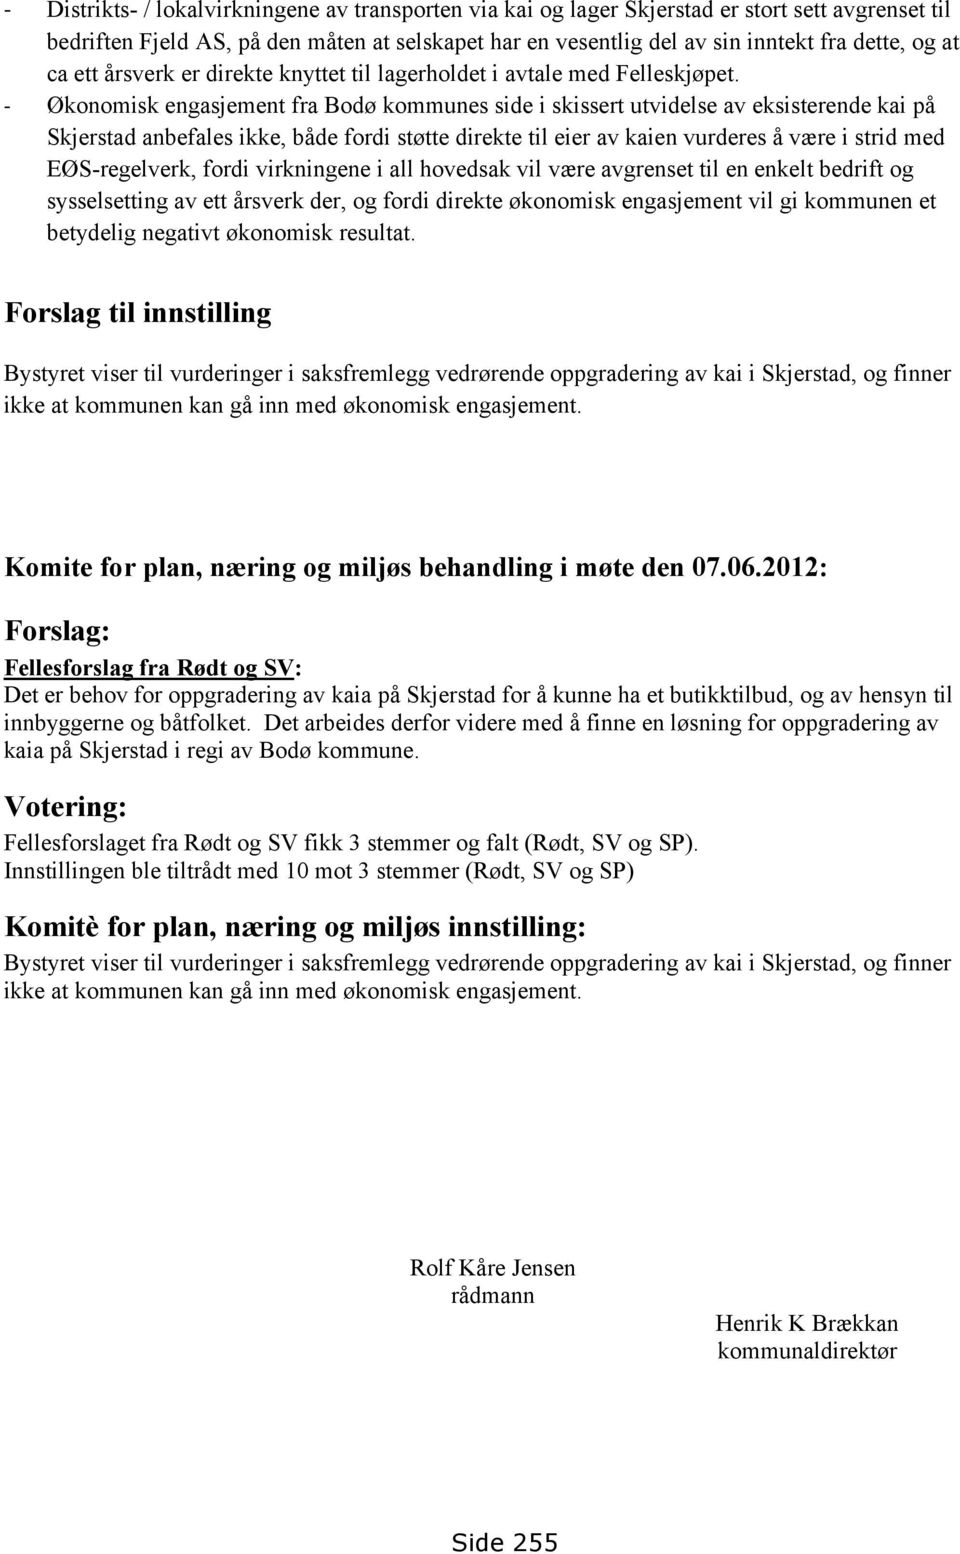 - Økonomisk engasjement fra Bodø kommunes side i skissert utvidelse av eksisterende kai på Skjerstad anbefales ikke, både fordi støtte direkte til eier av kaien vurderes å være i strid med